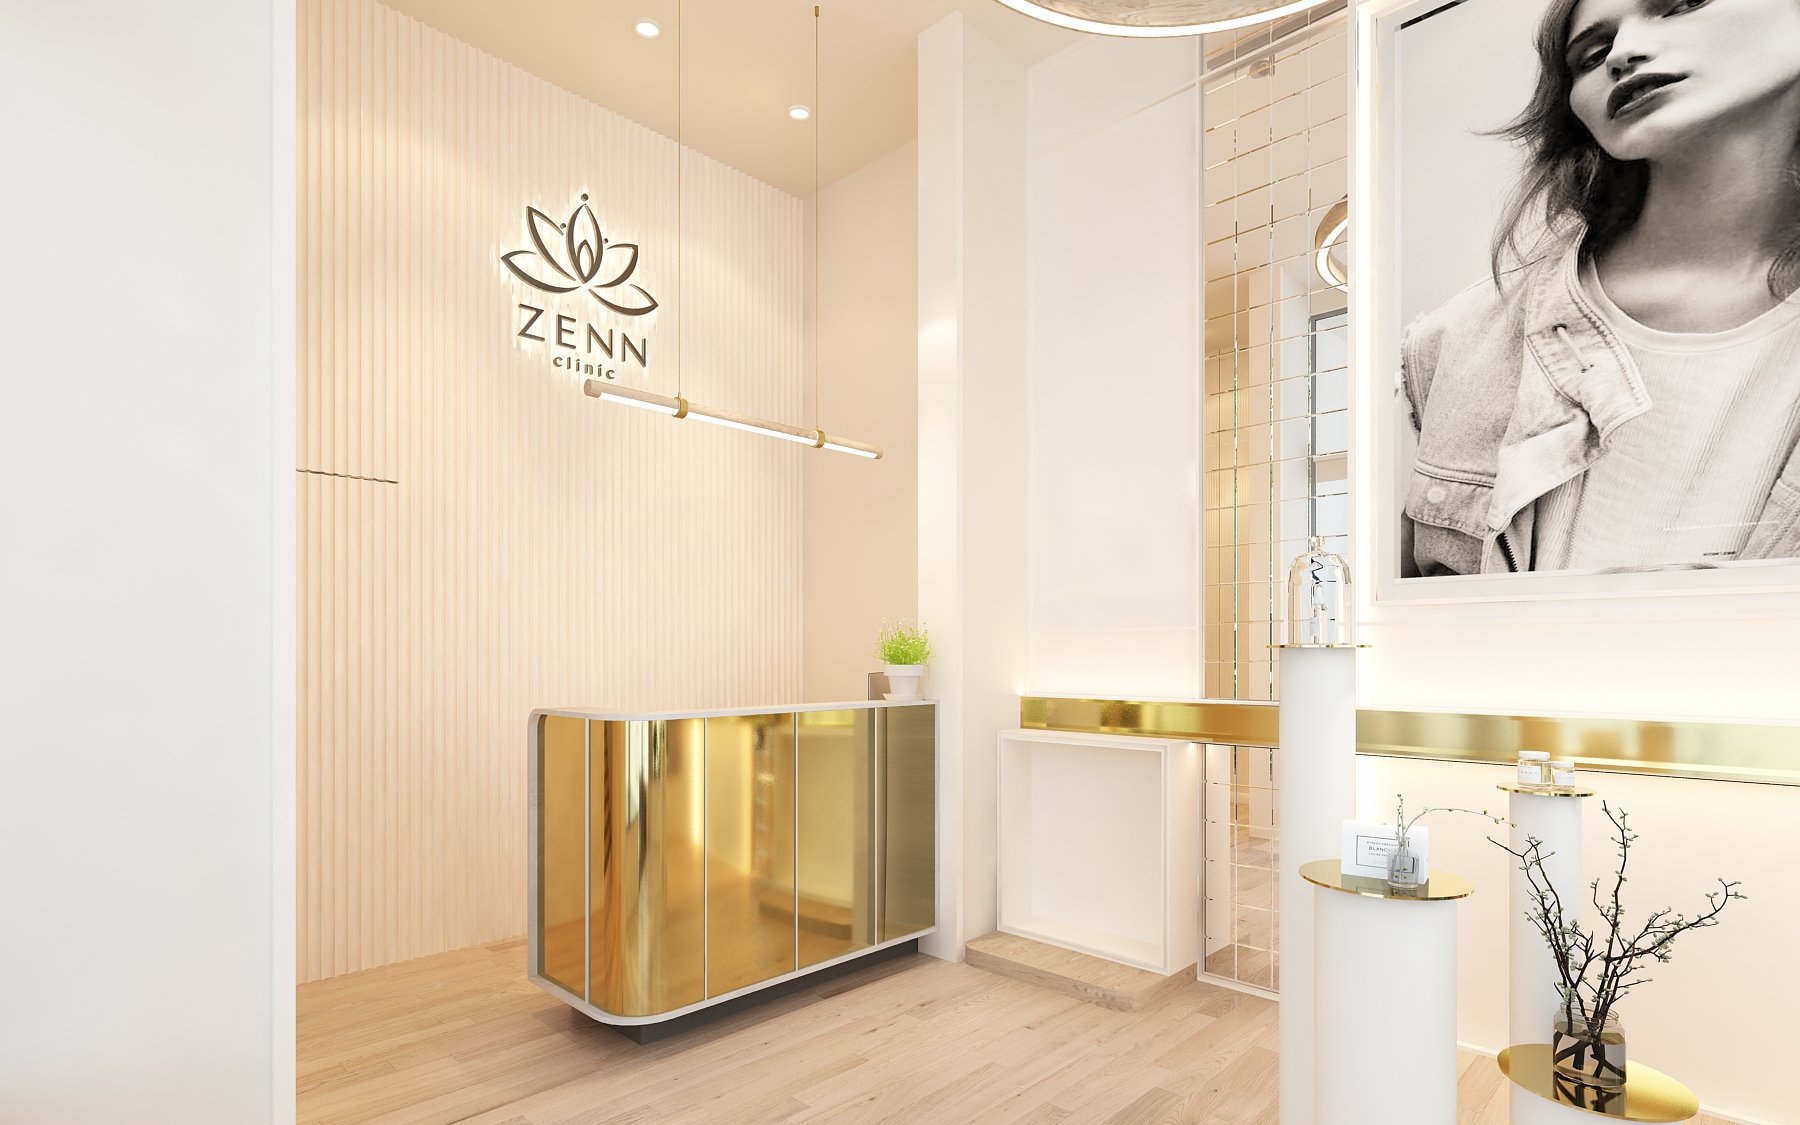 Zenn Clinic Quy Nhơn - Địa điểm thẩm mỹ hội tụ hàng loạt công nghệ triệu đô